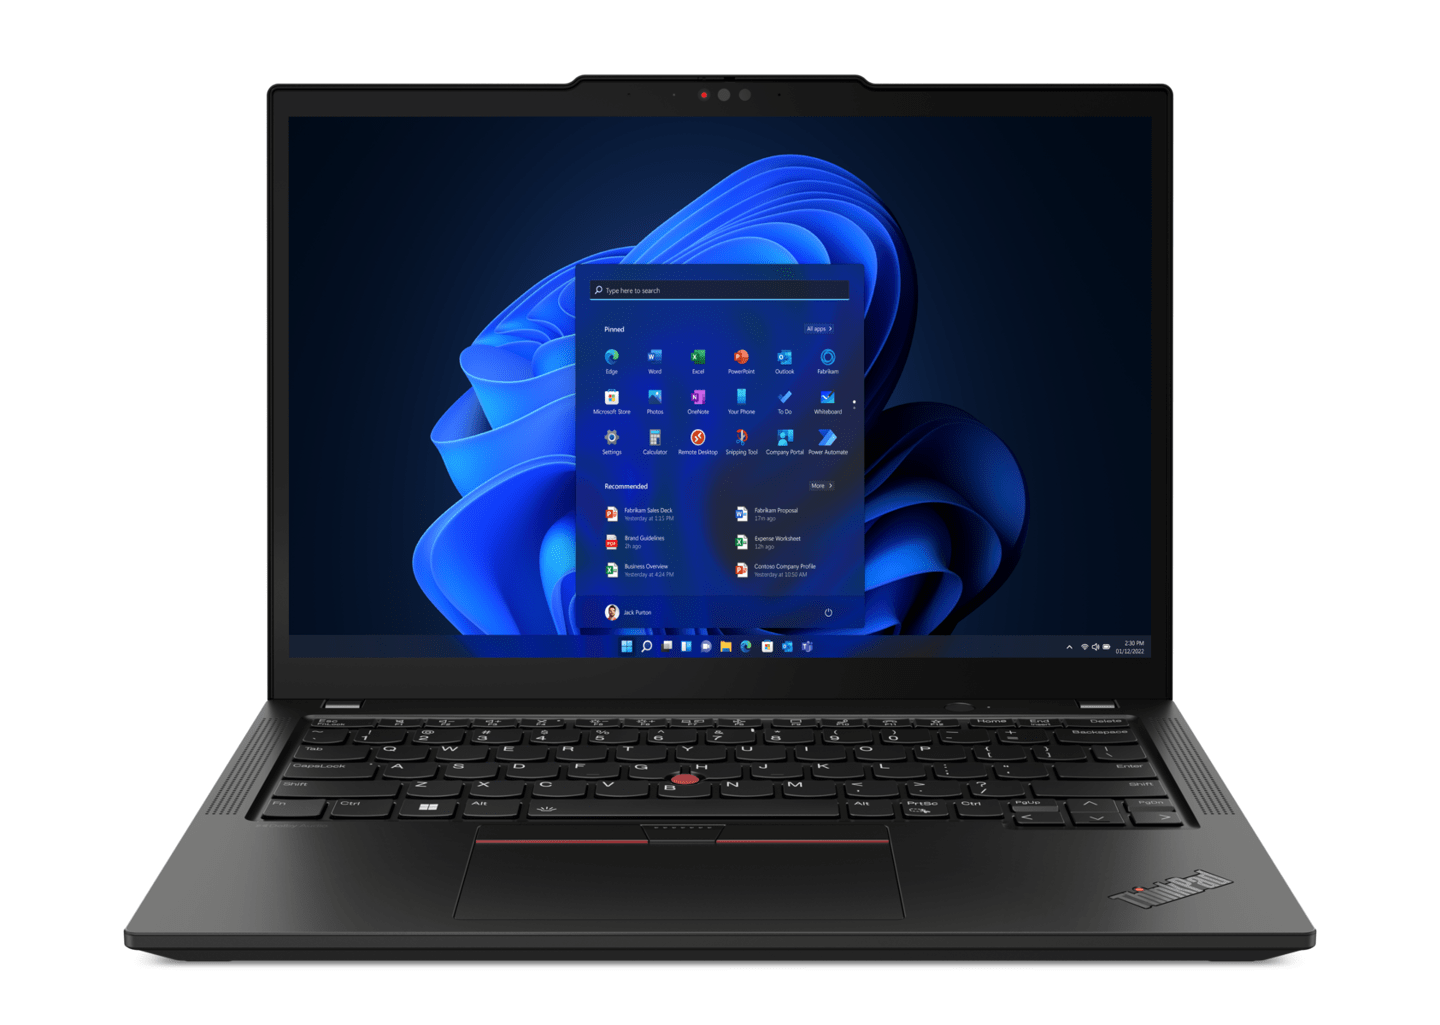  2 月 27 日聯想發布 ThinkPad X13 Gen 4 和 ThinkPad X13 Yoga Gen 4 筆記本